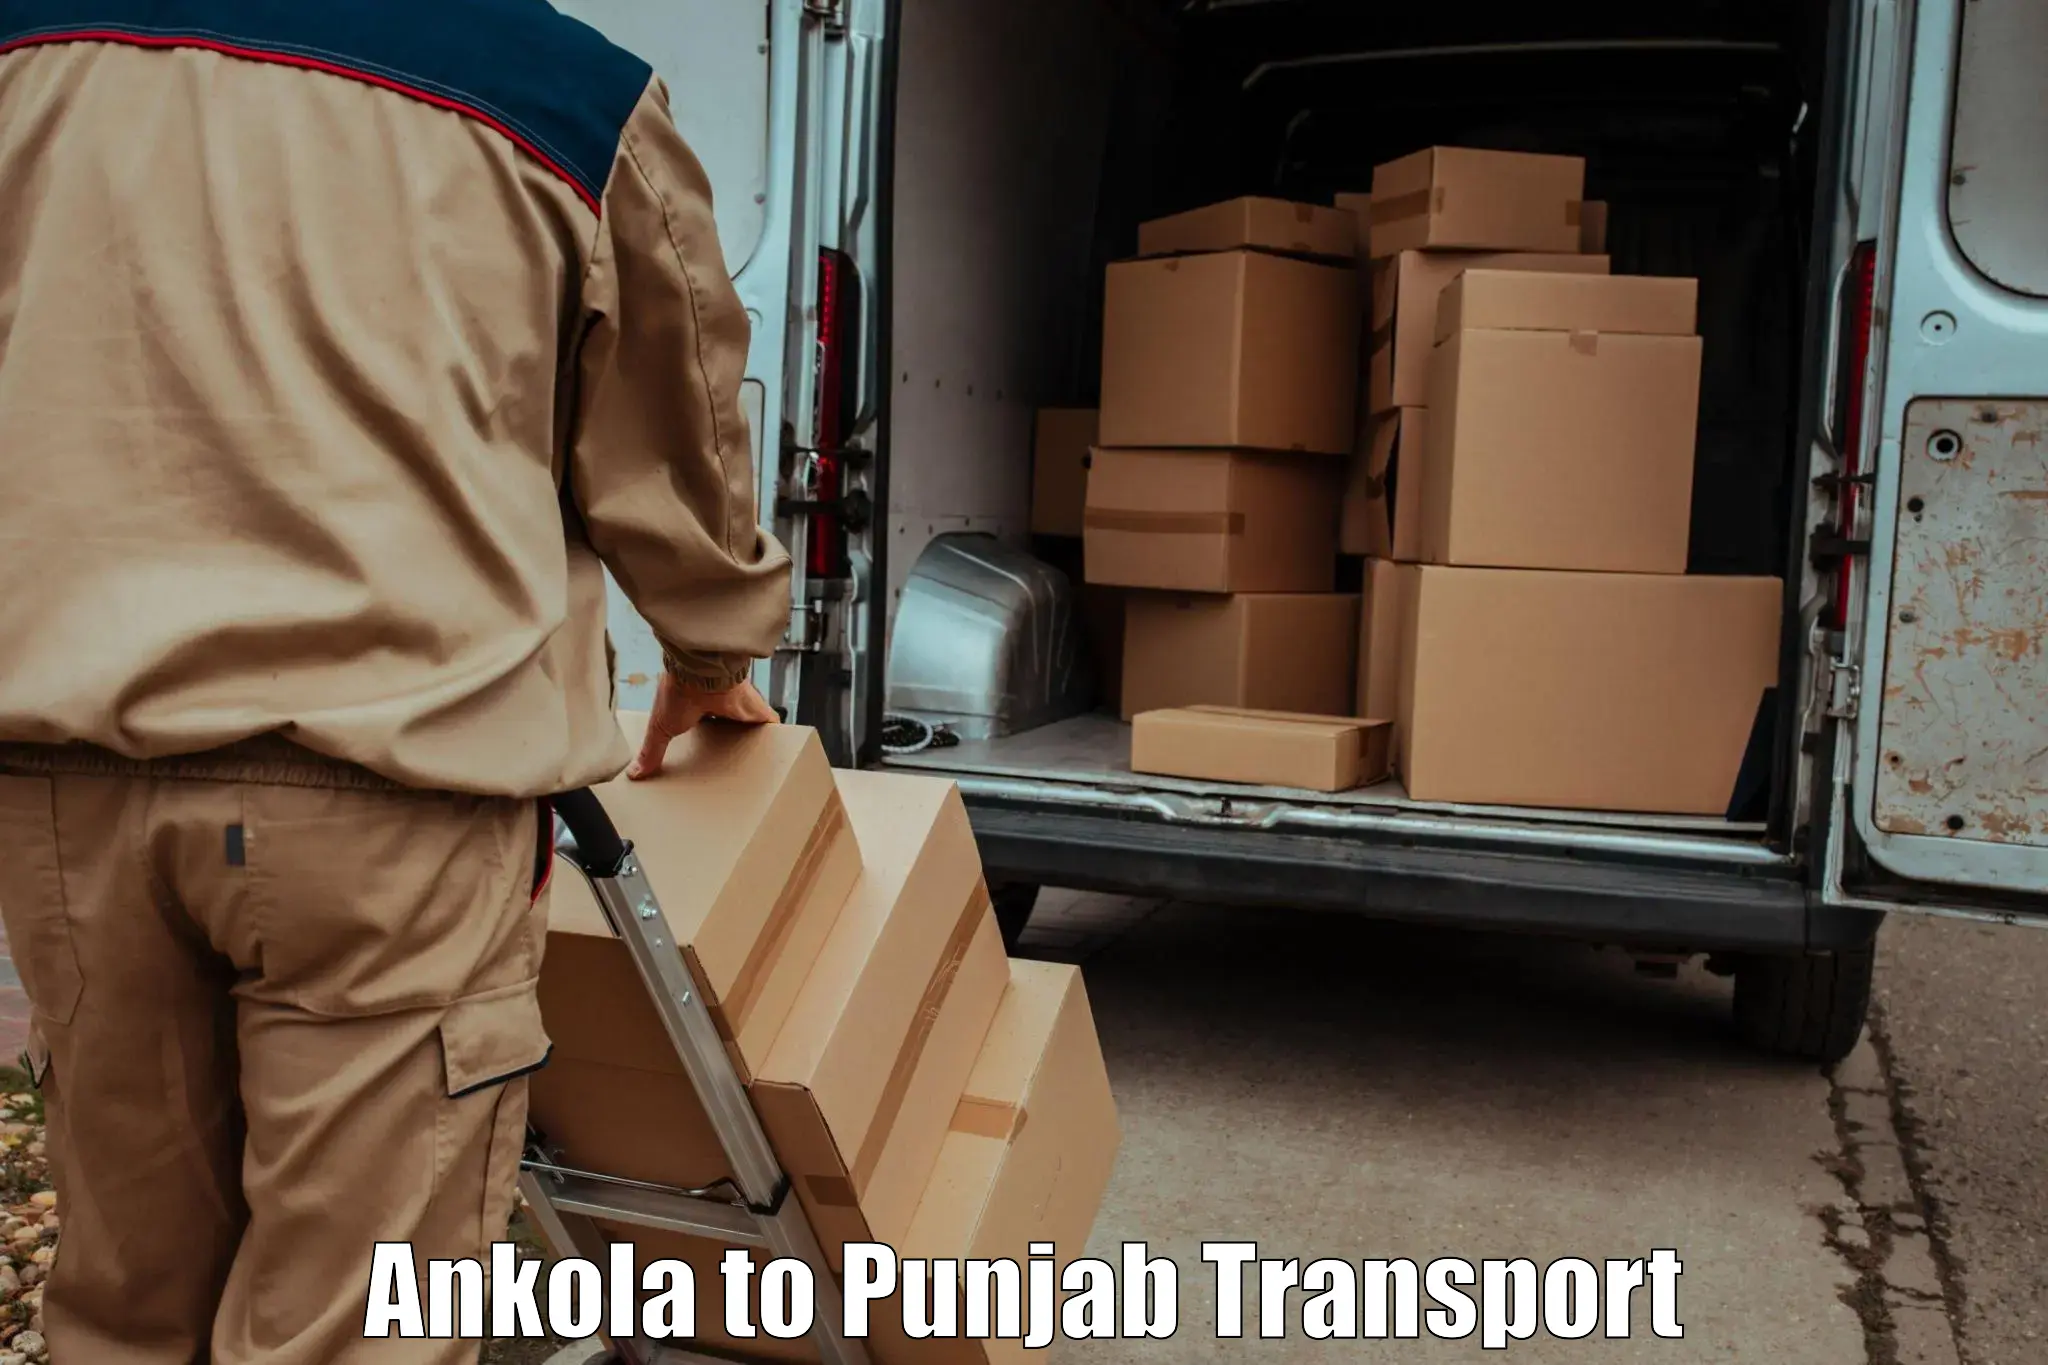 Commercial transport service Ankola to Samana